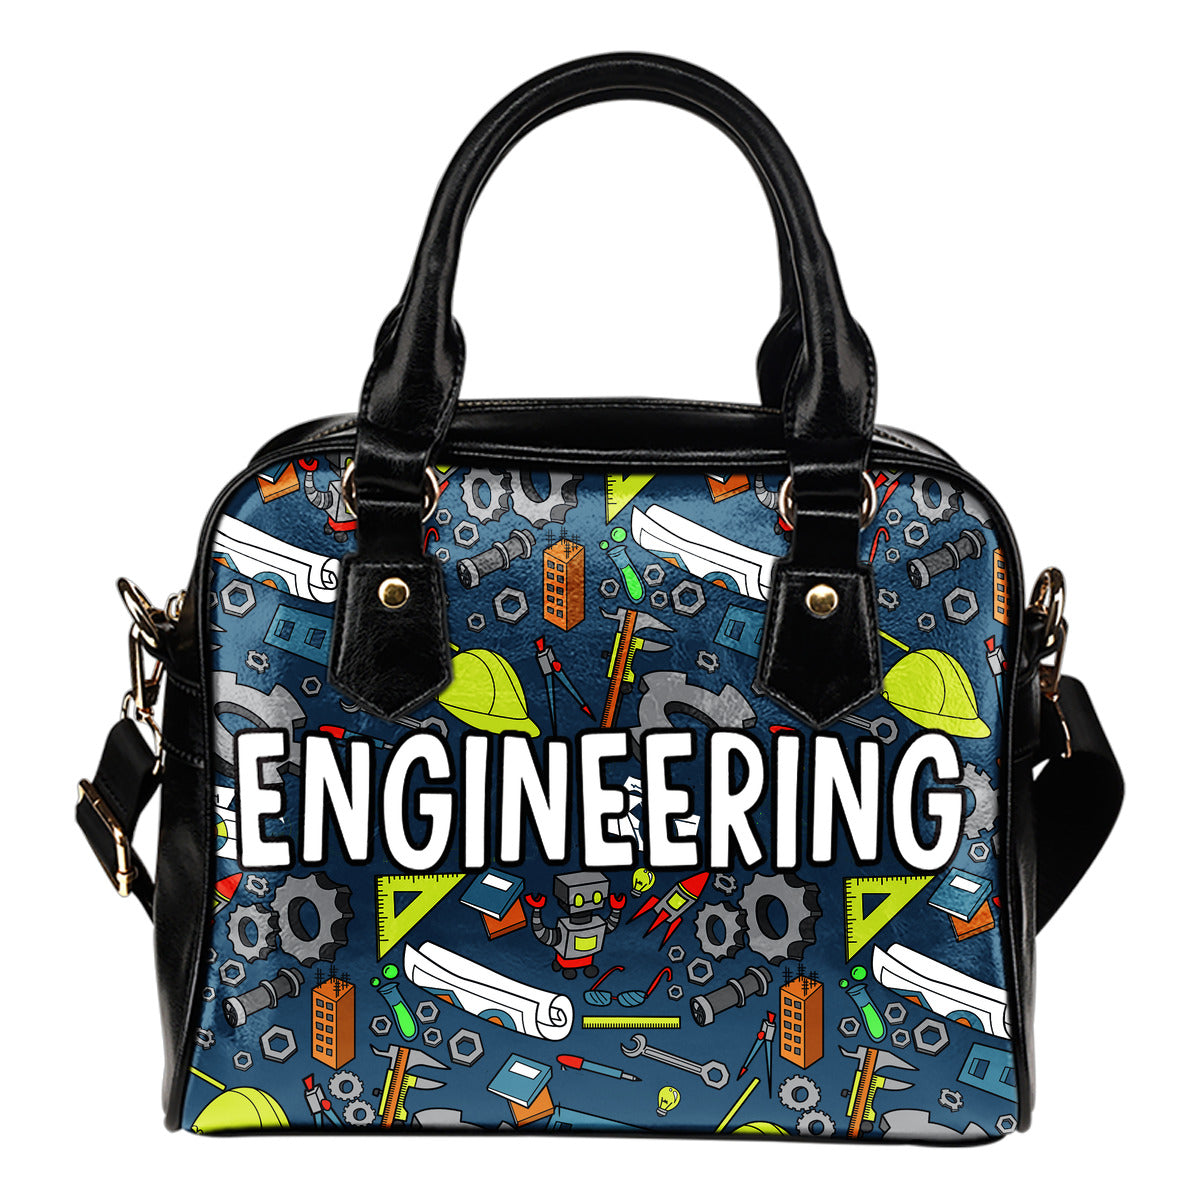 Engineering Handbag